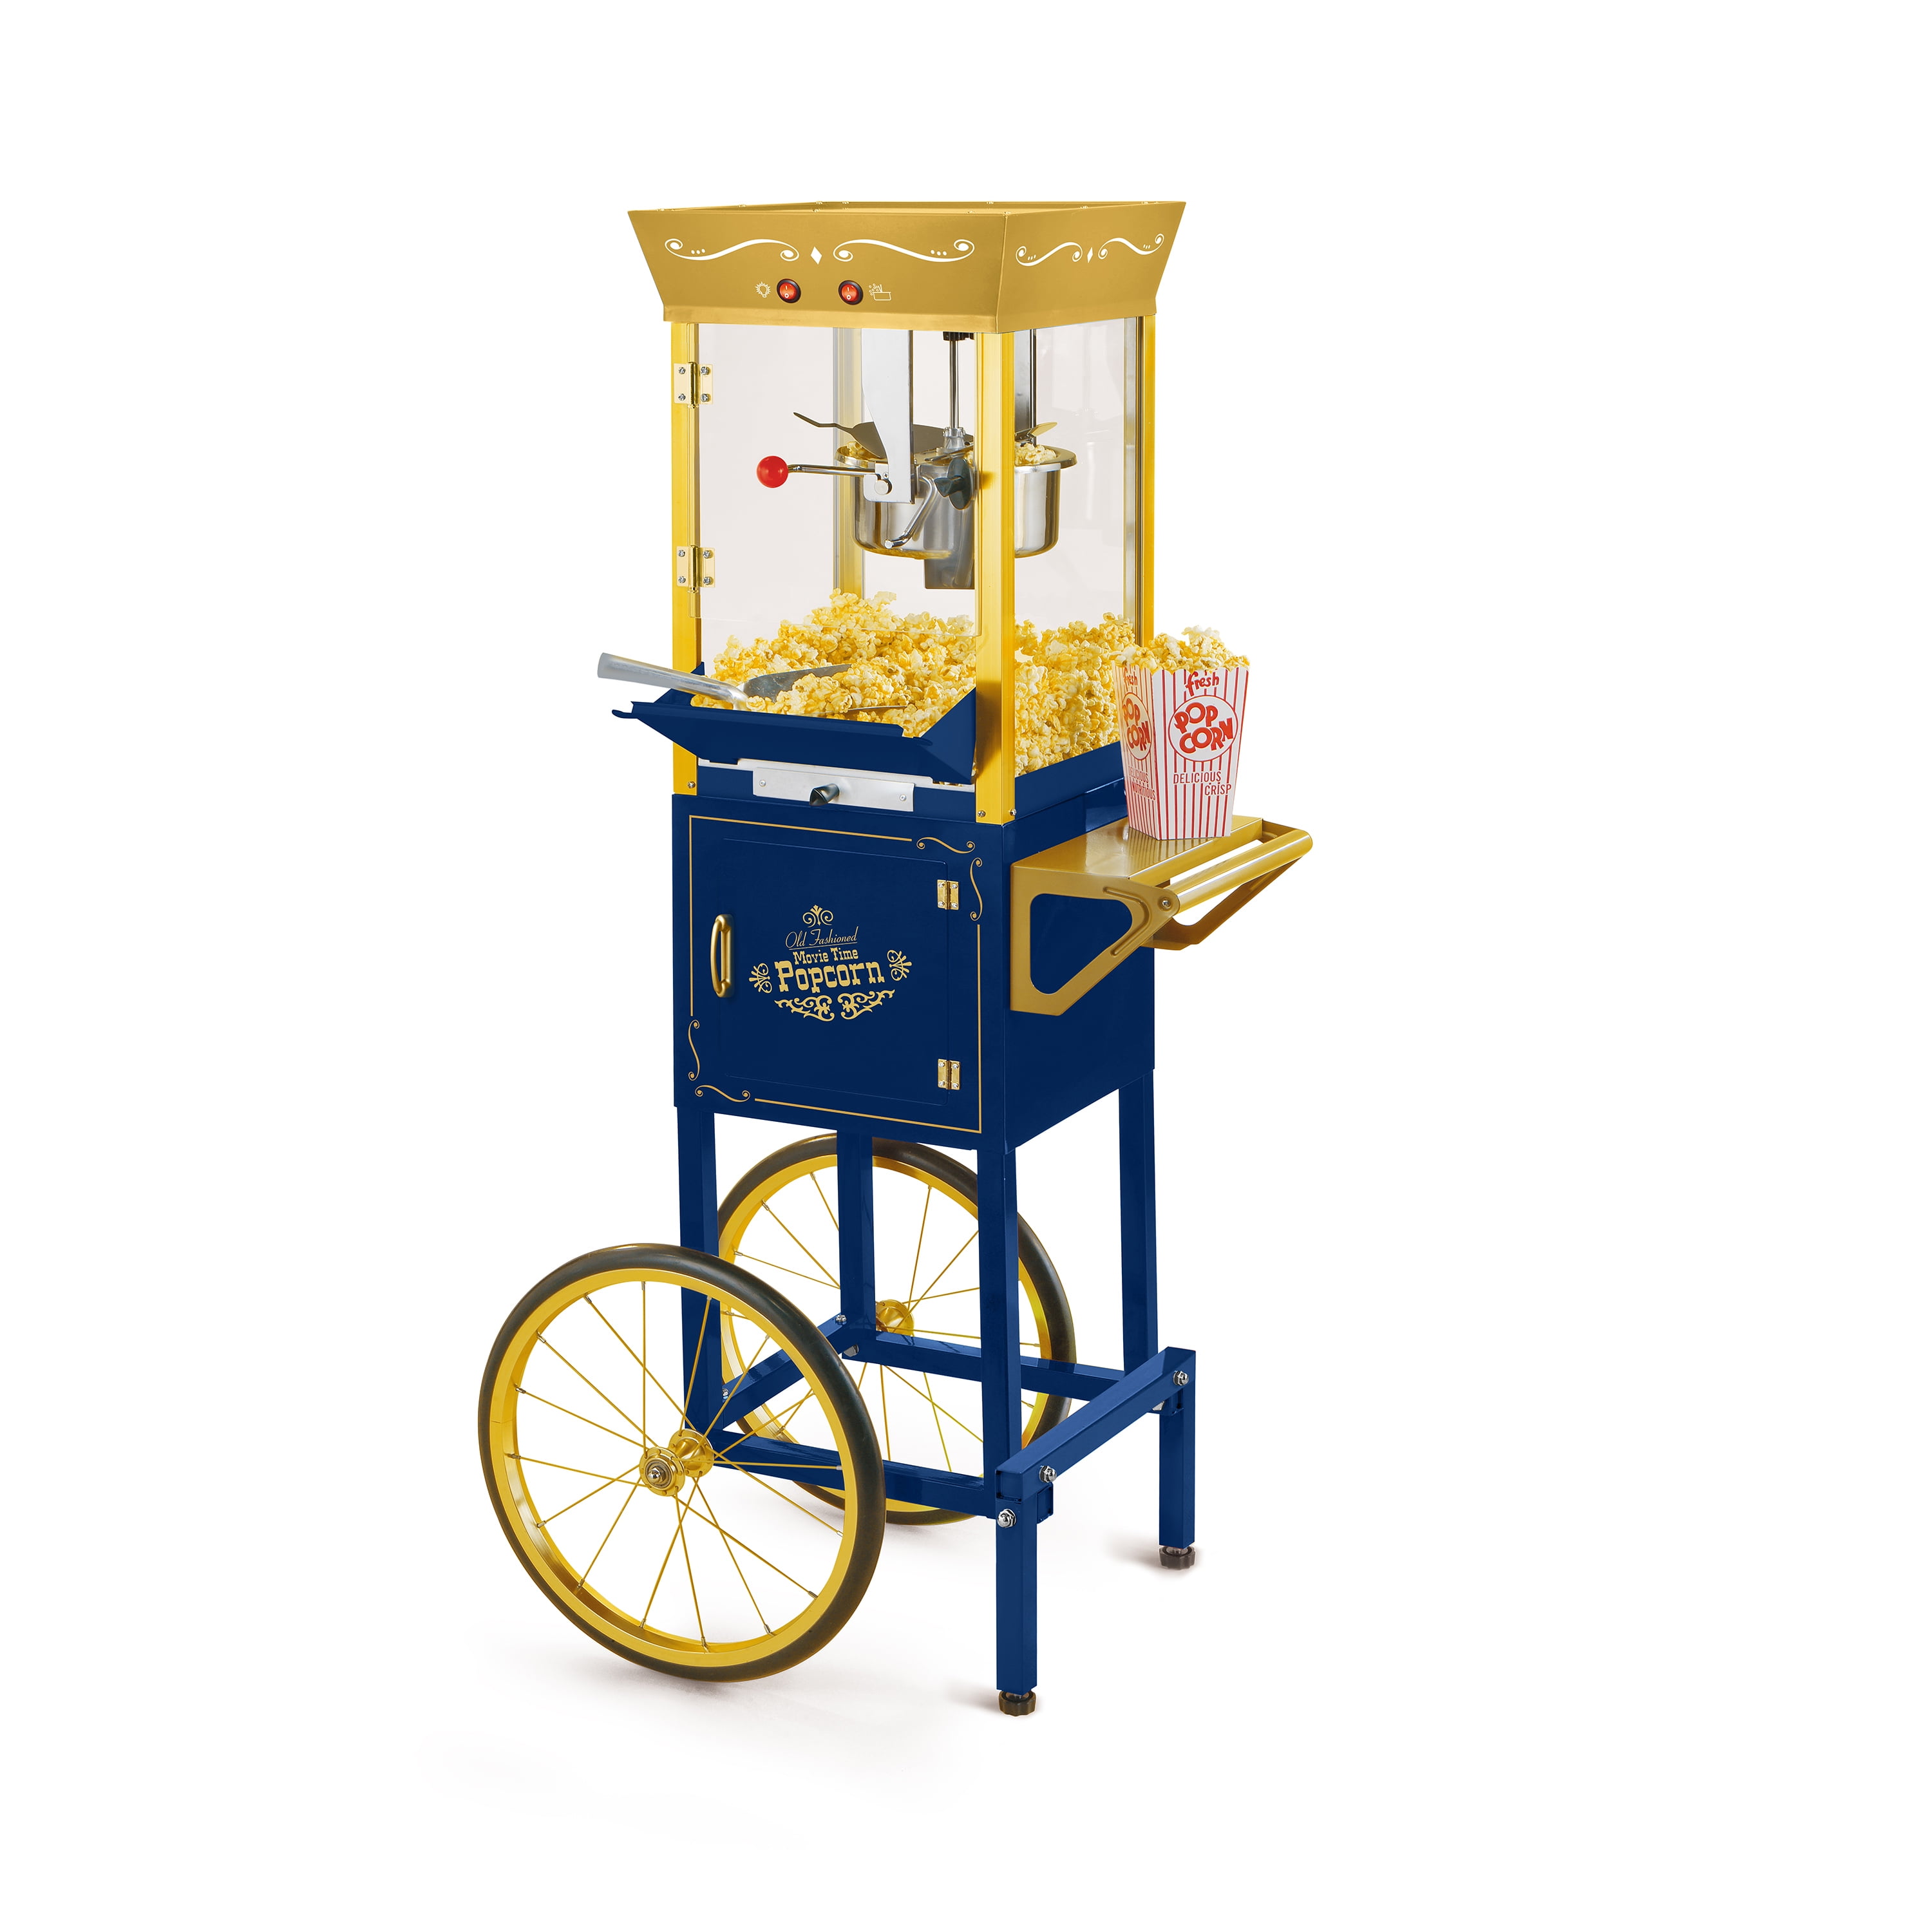 Nostalgia Popcorn Maker & Concession Cart - Sam's Club